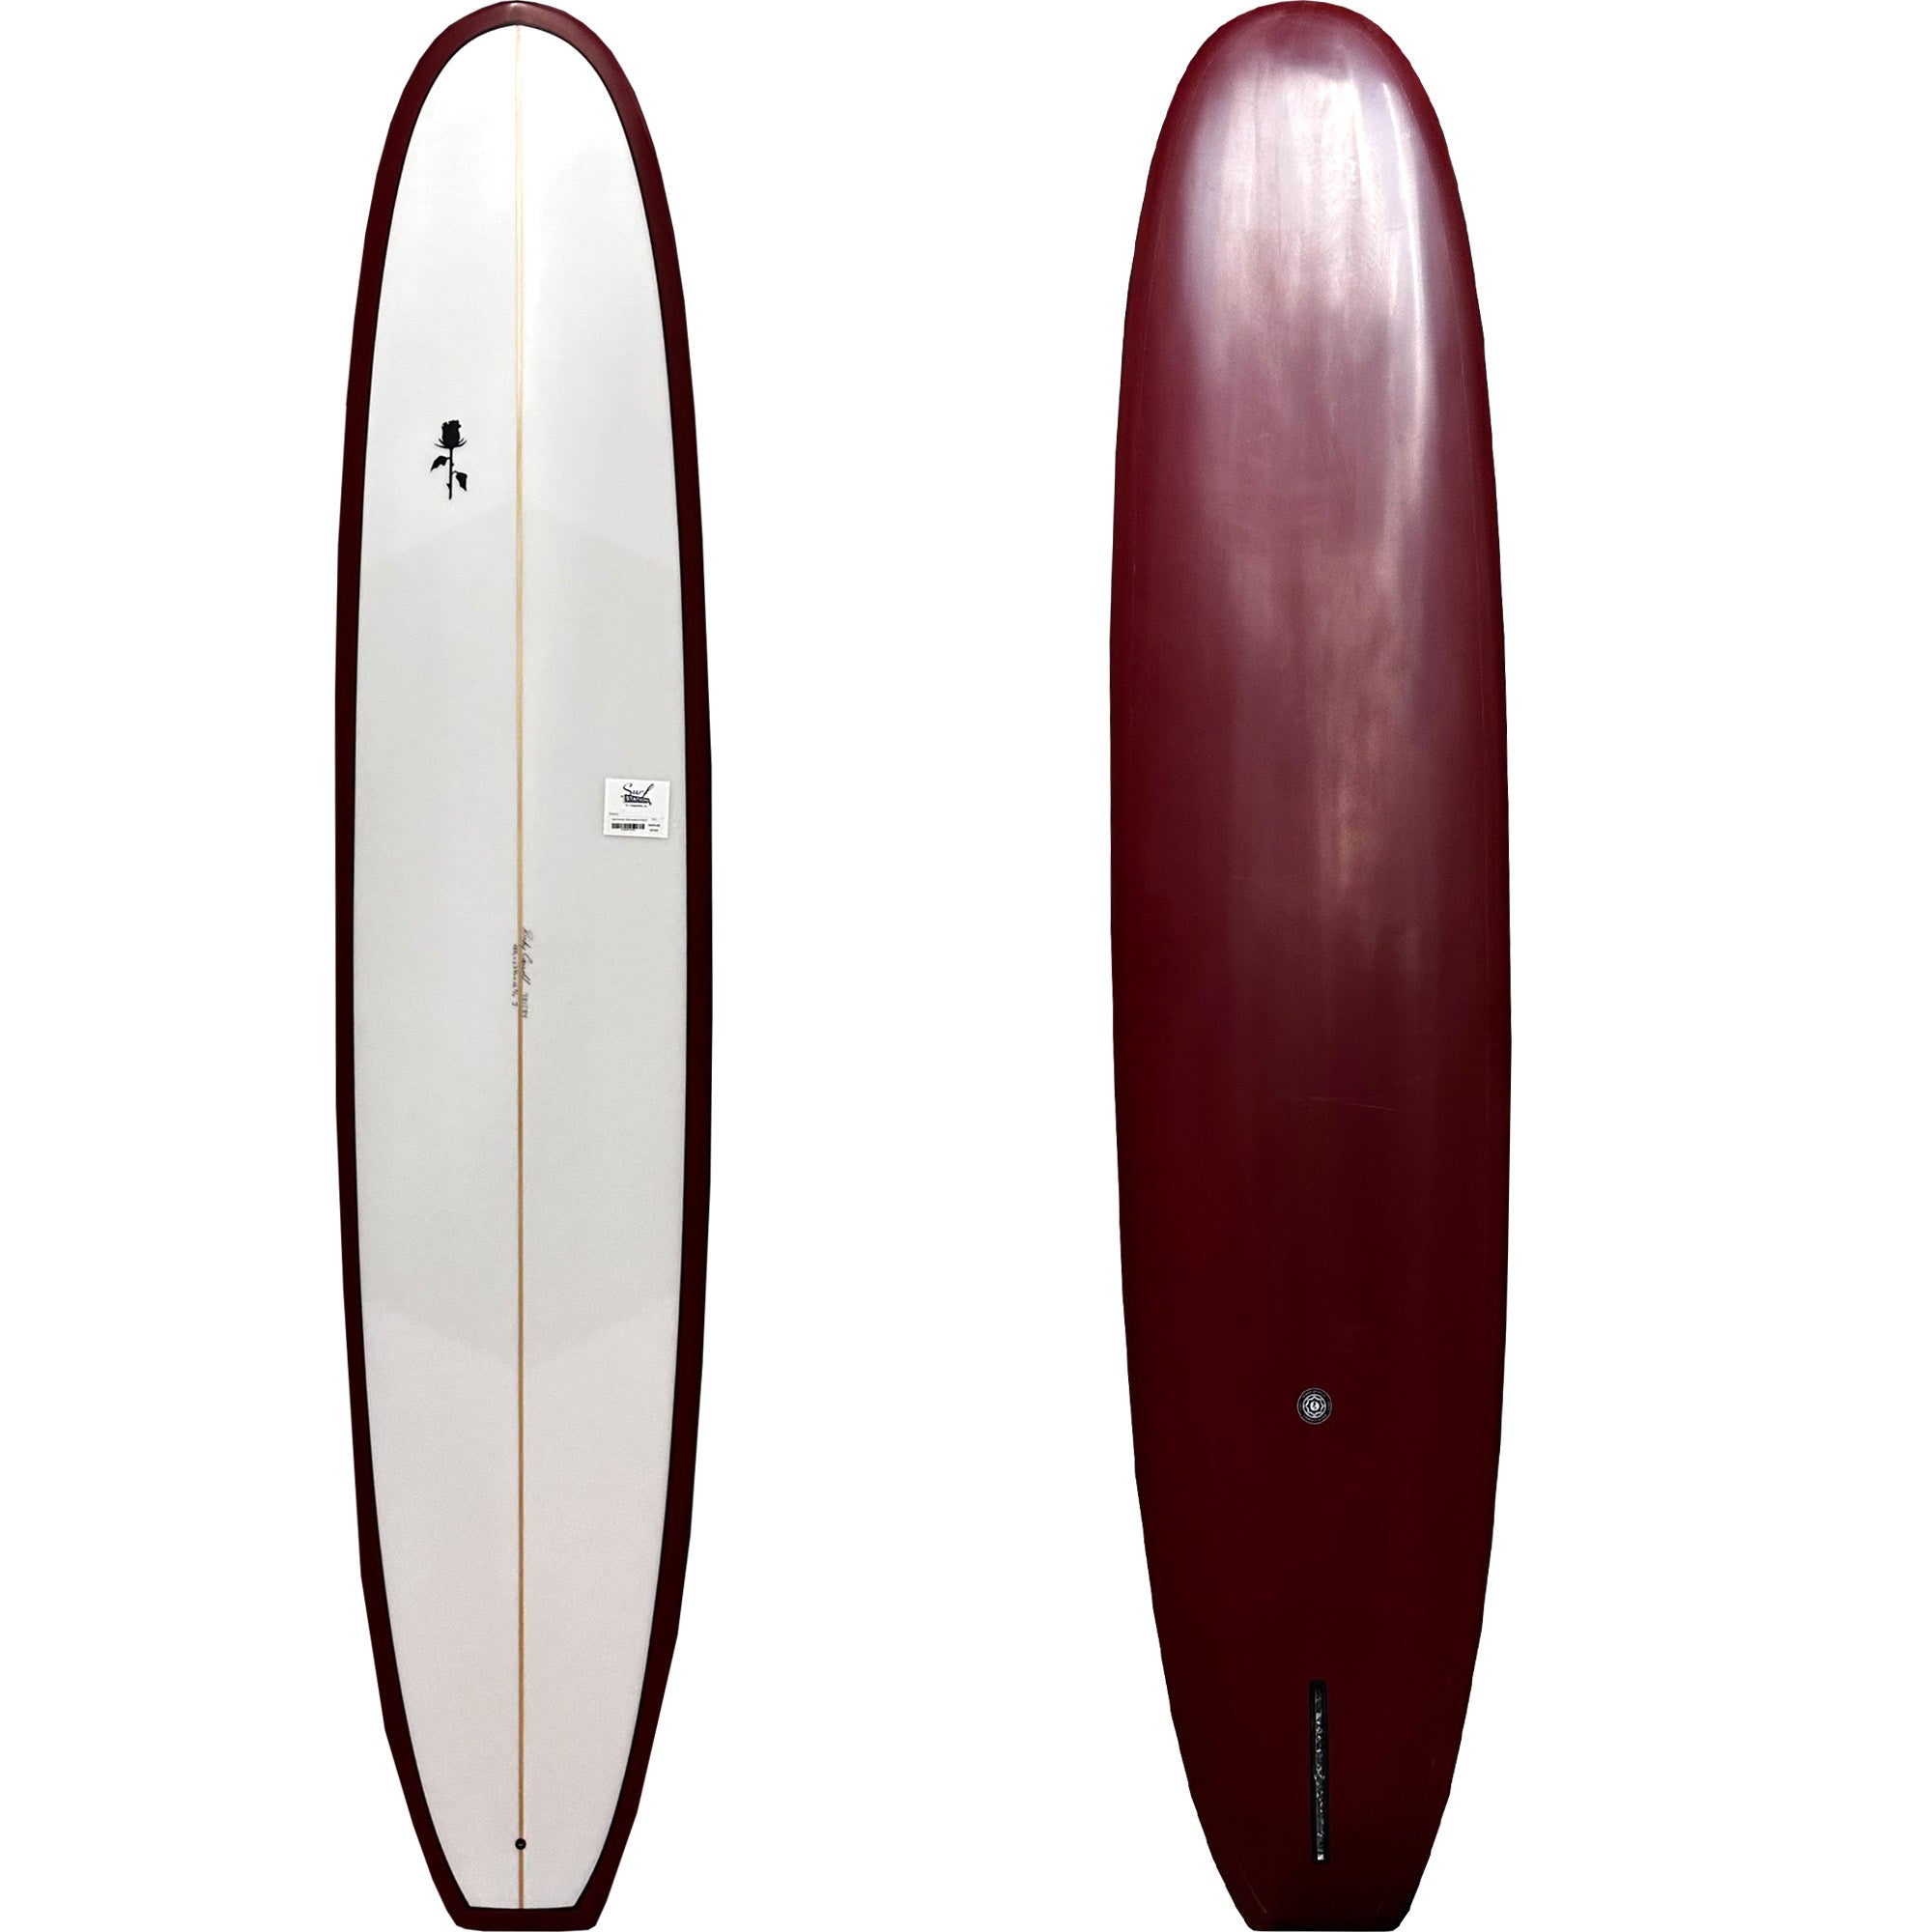 Black Rose Mfg. 50/50 Longboard Surfboard